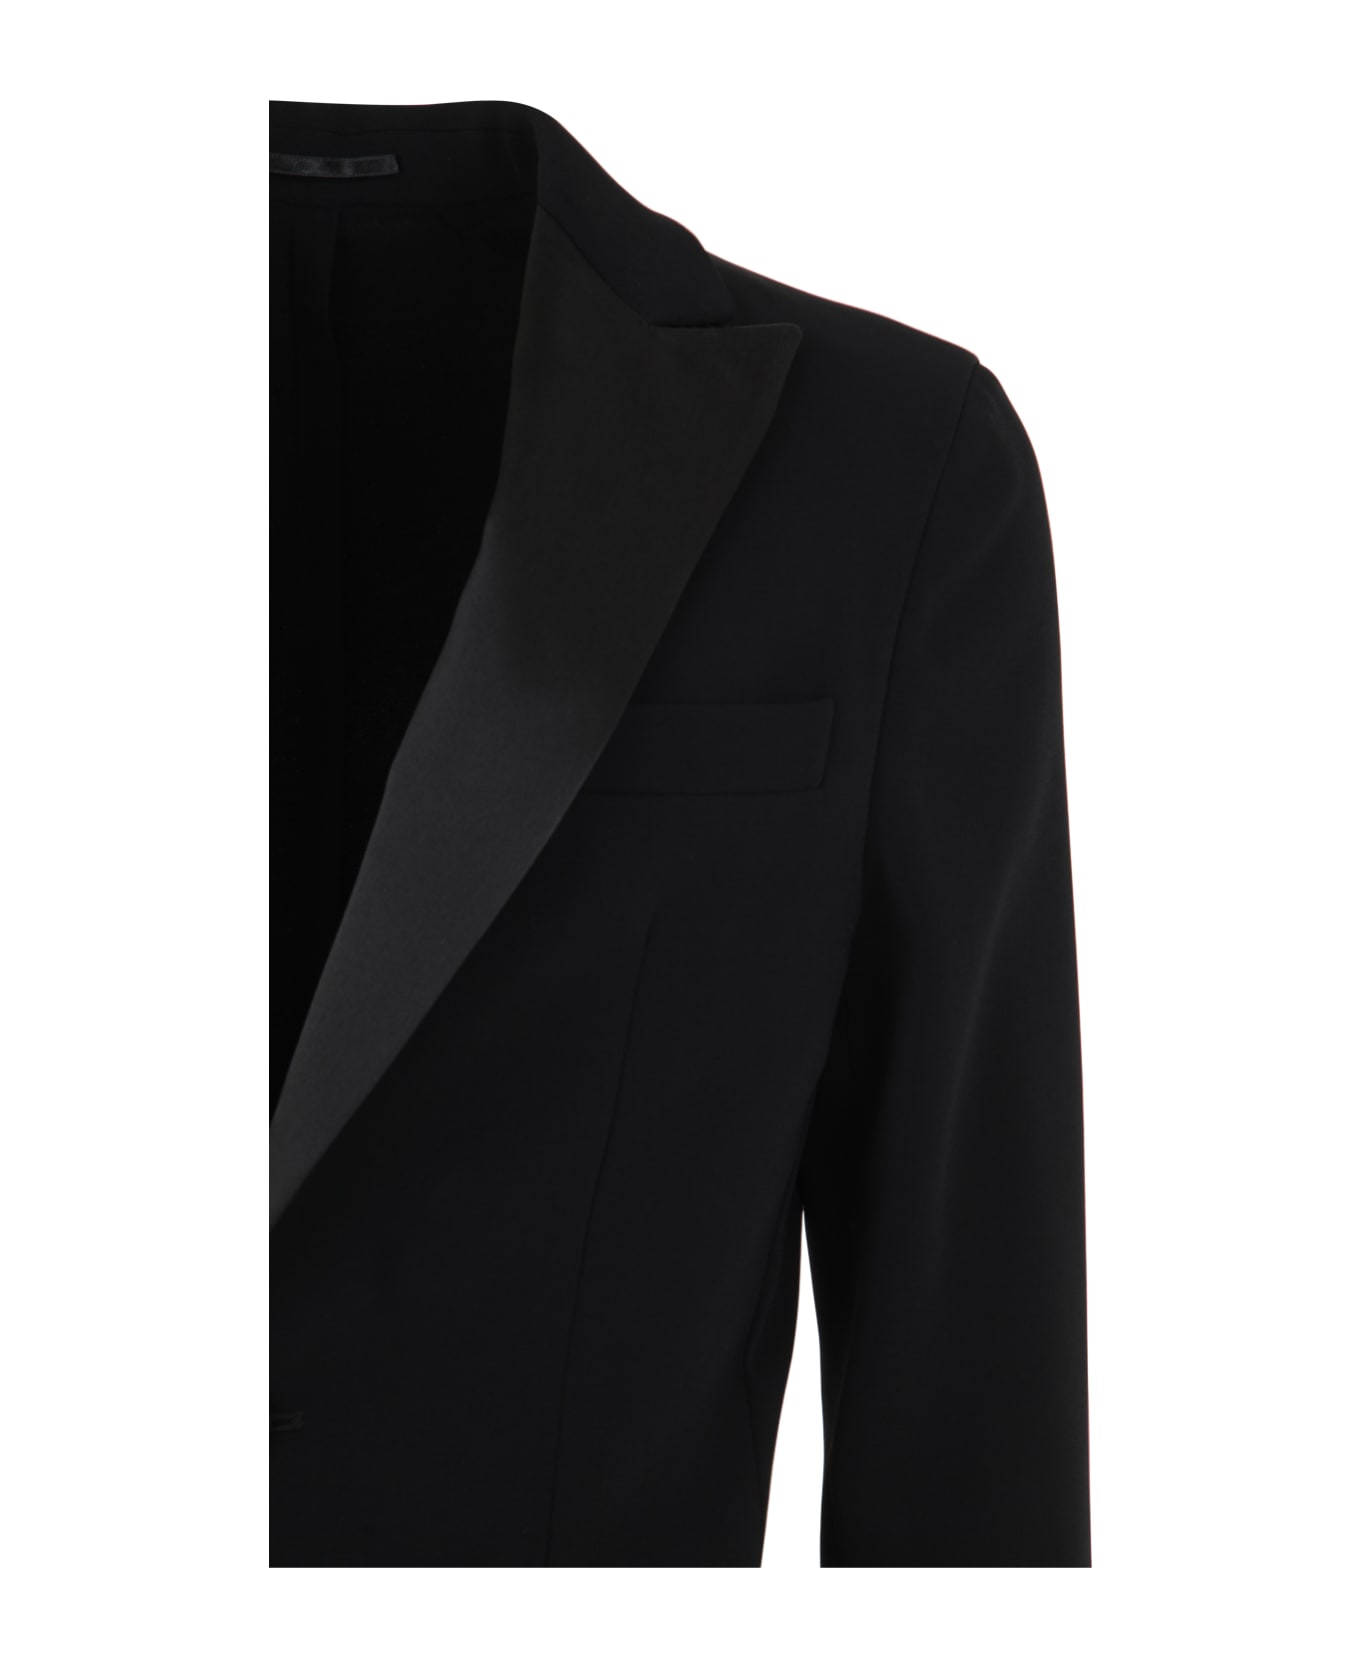 Dsquared2 Miami Suit - Black